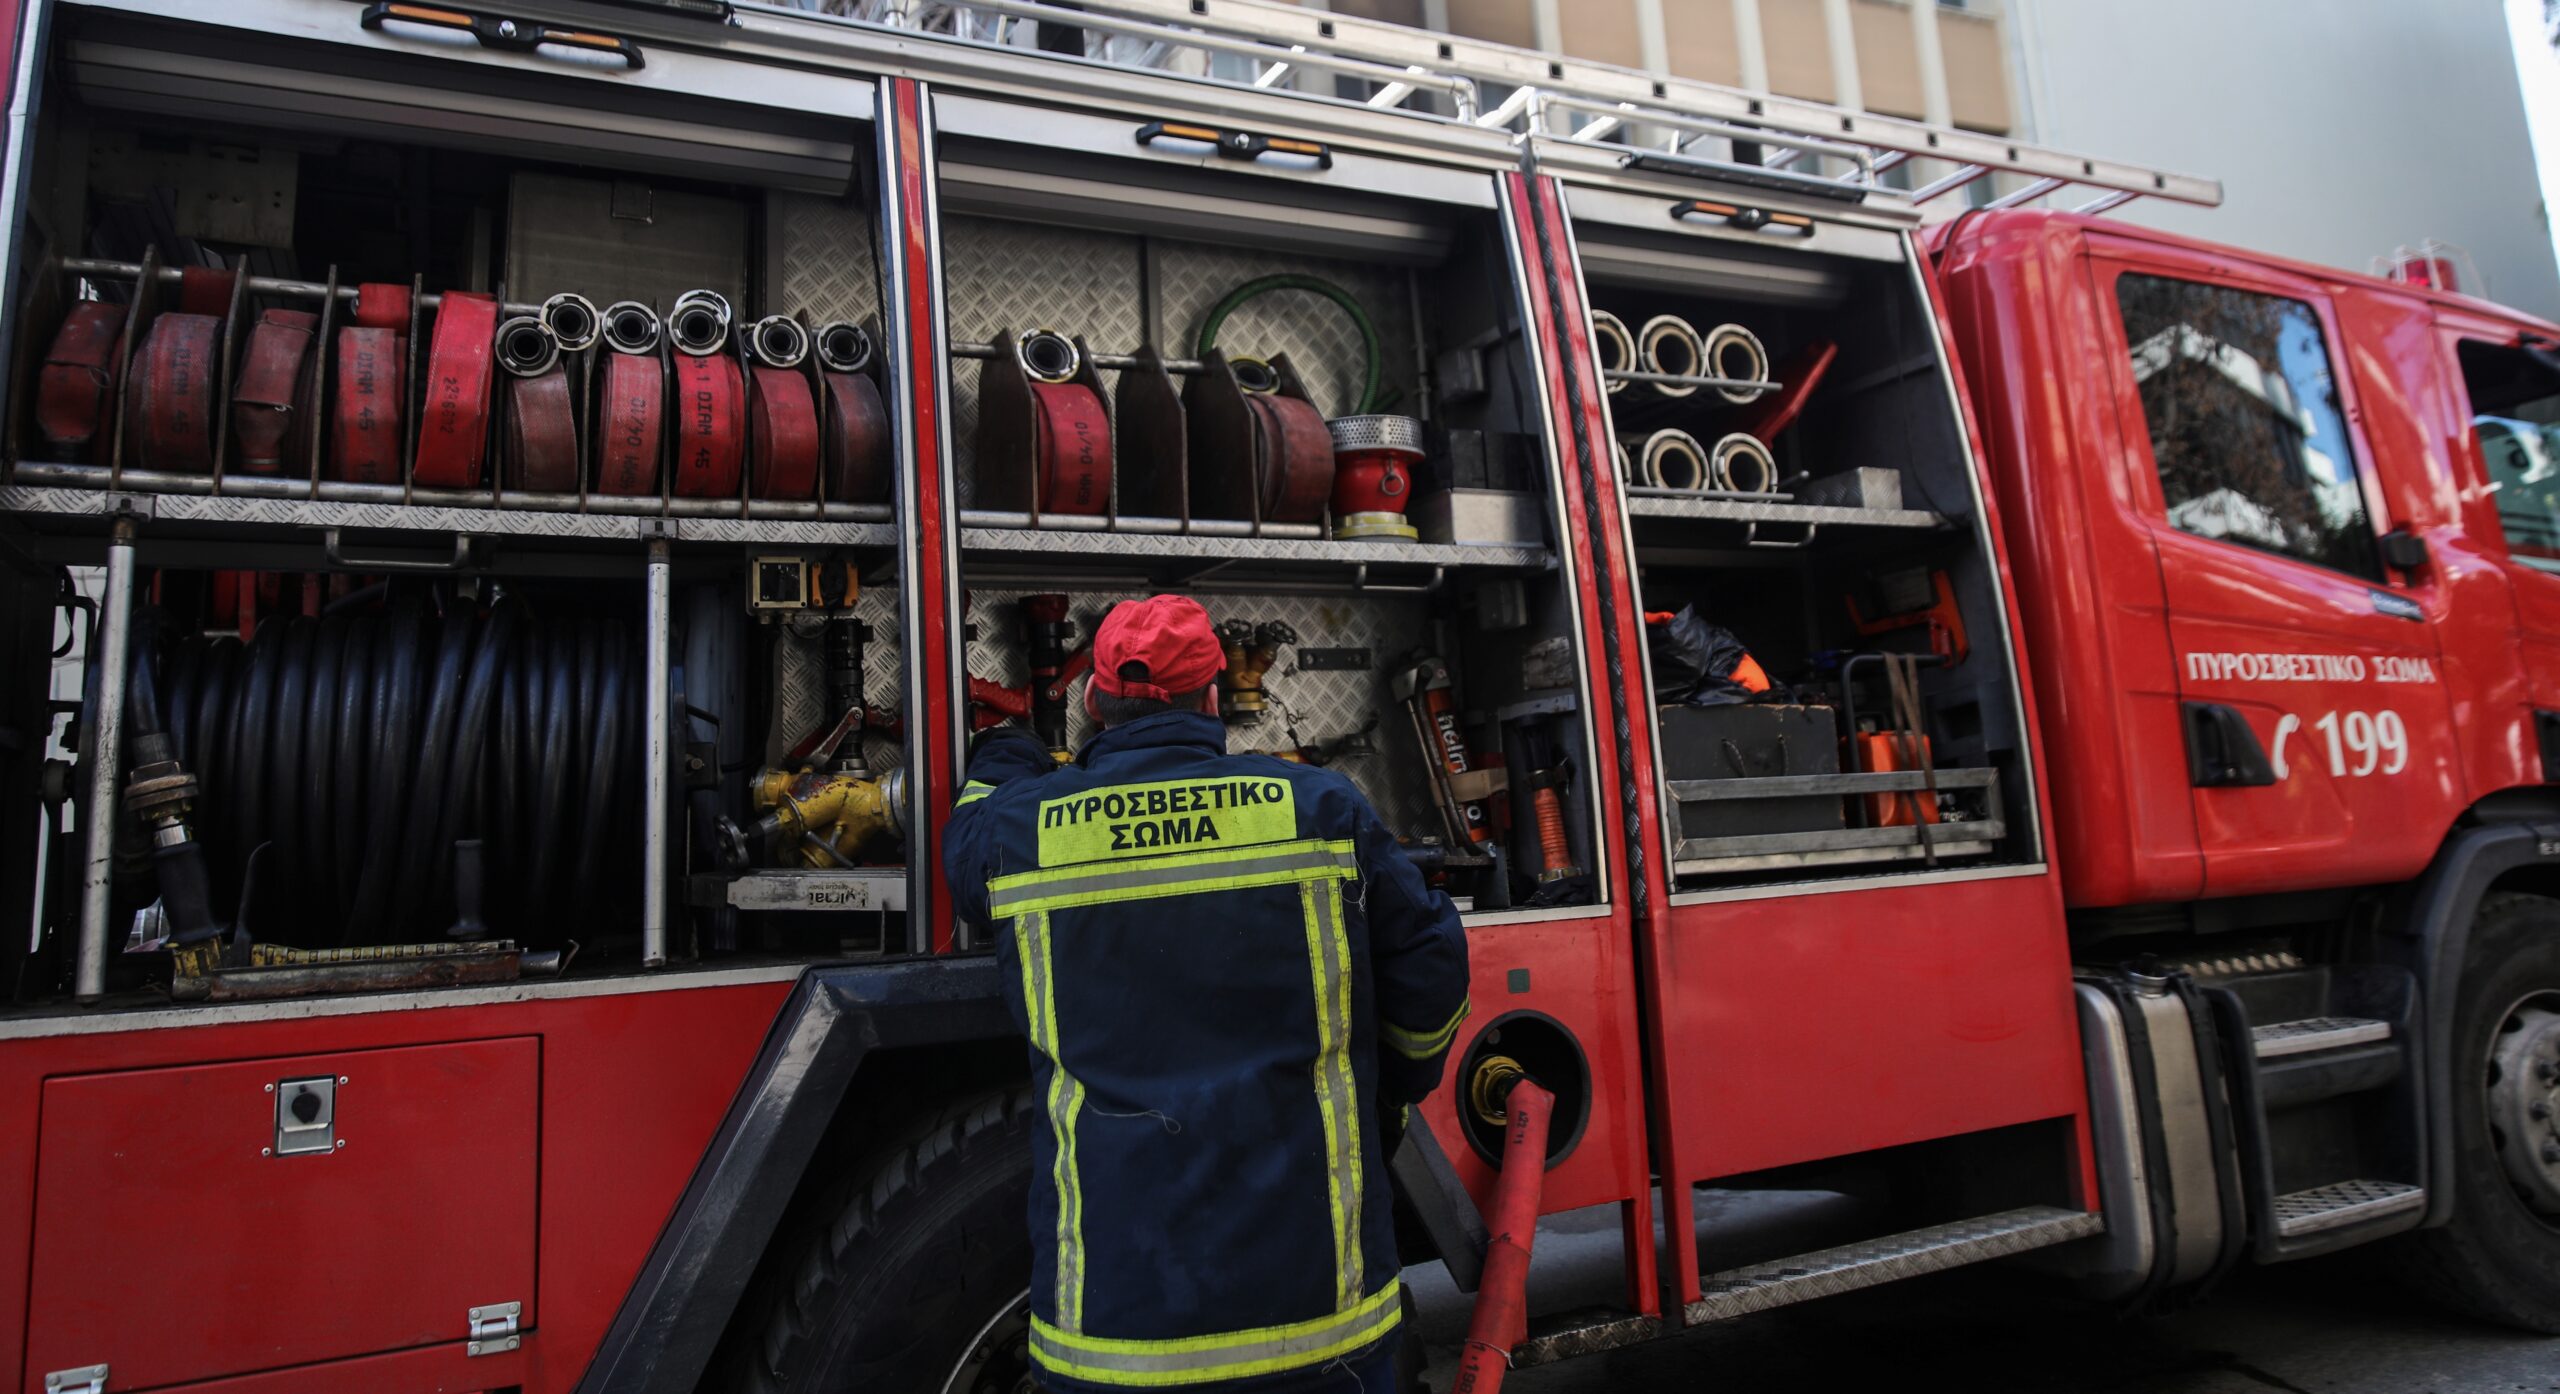 Λέσβος: Έσβησε γρήγορα η φωτιά κοντά στη Μονή Πυθαρίου